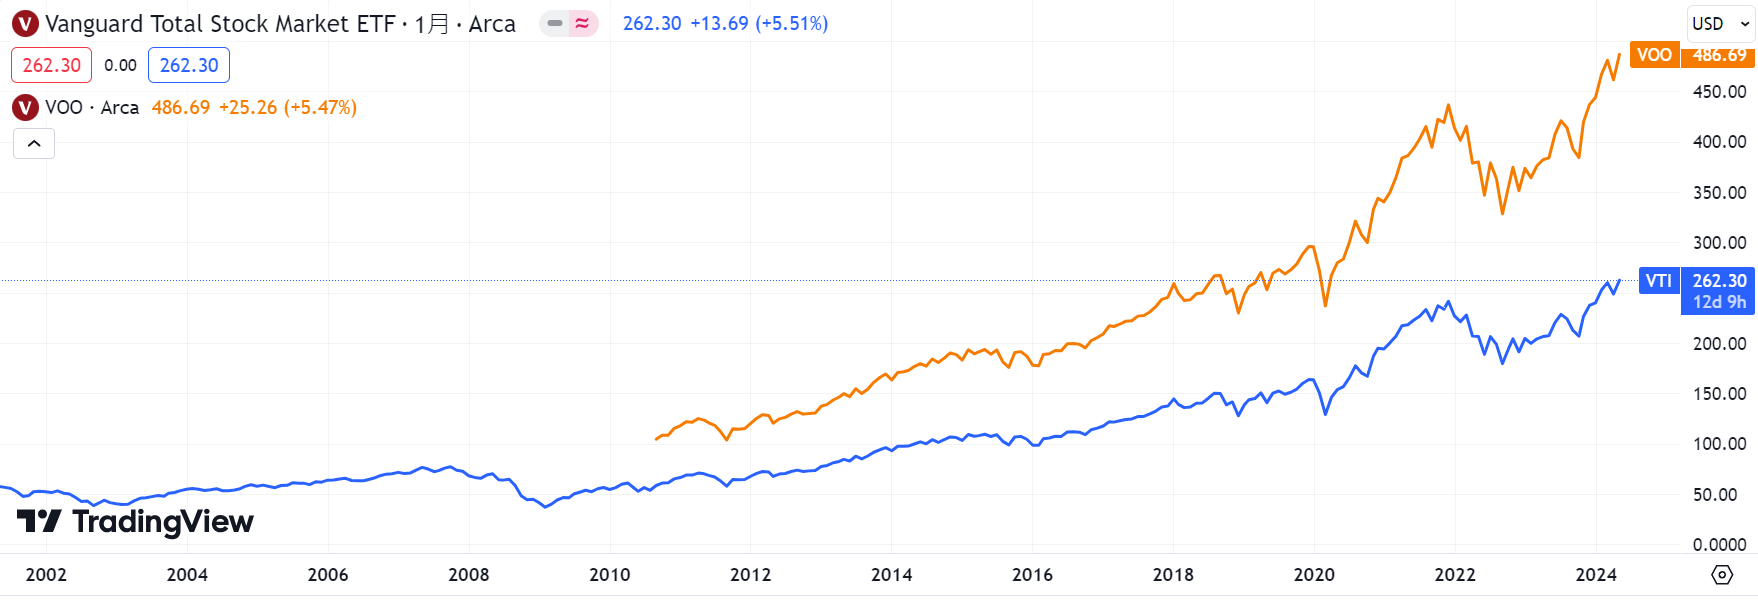 上圖為 VOO 與 VTI 歷年來的股價走勢圖，由此可見 VOO 的波動略大於 VTI。